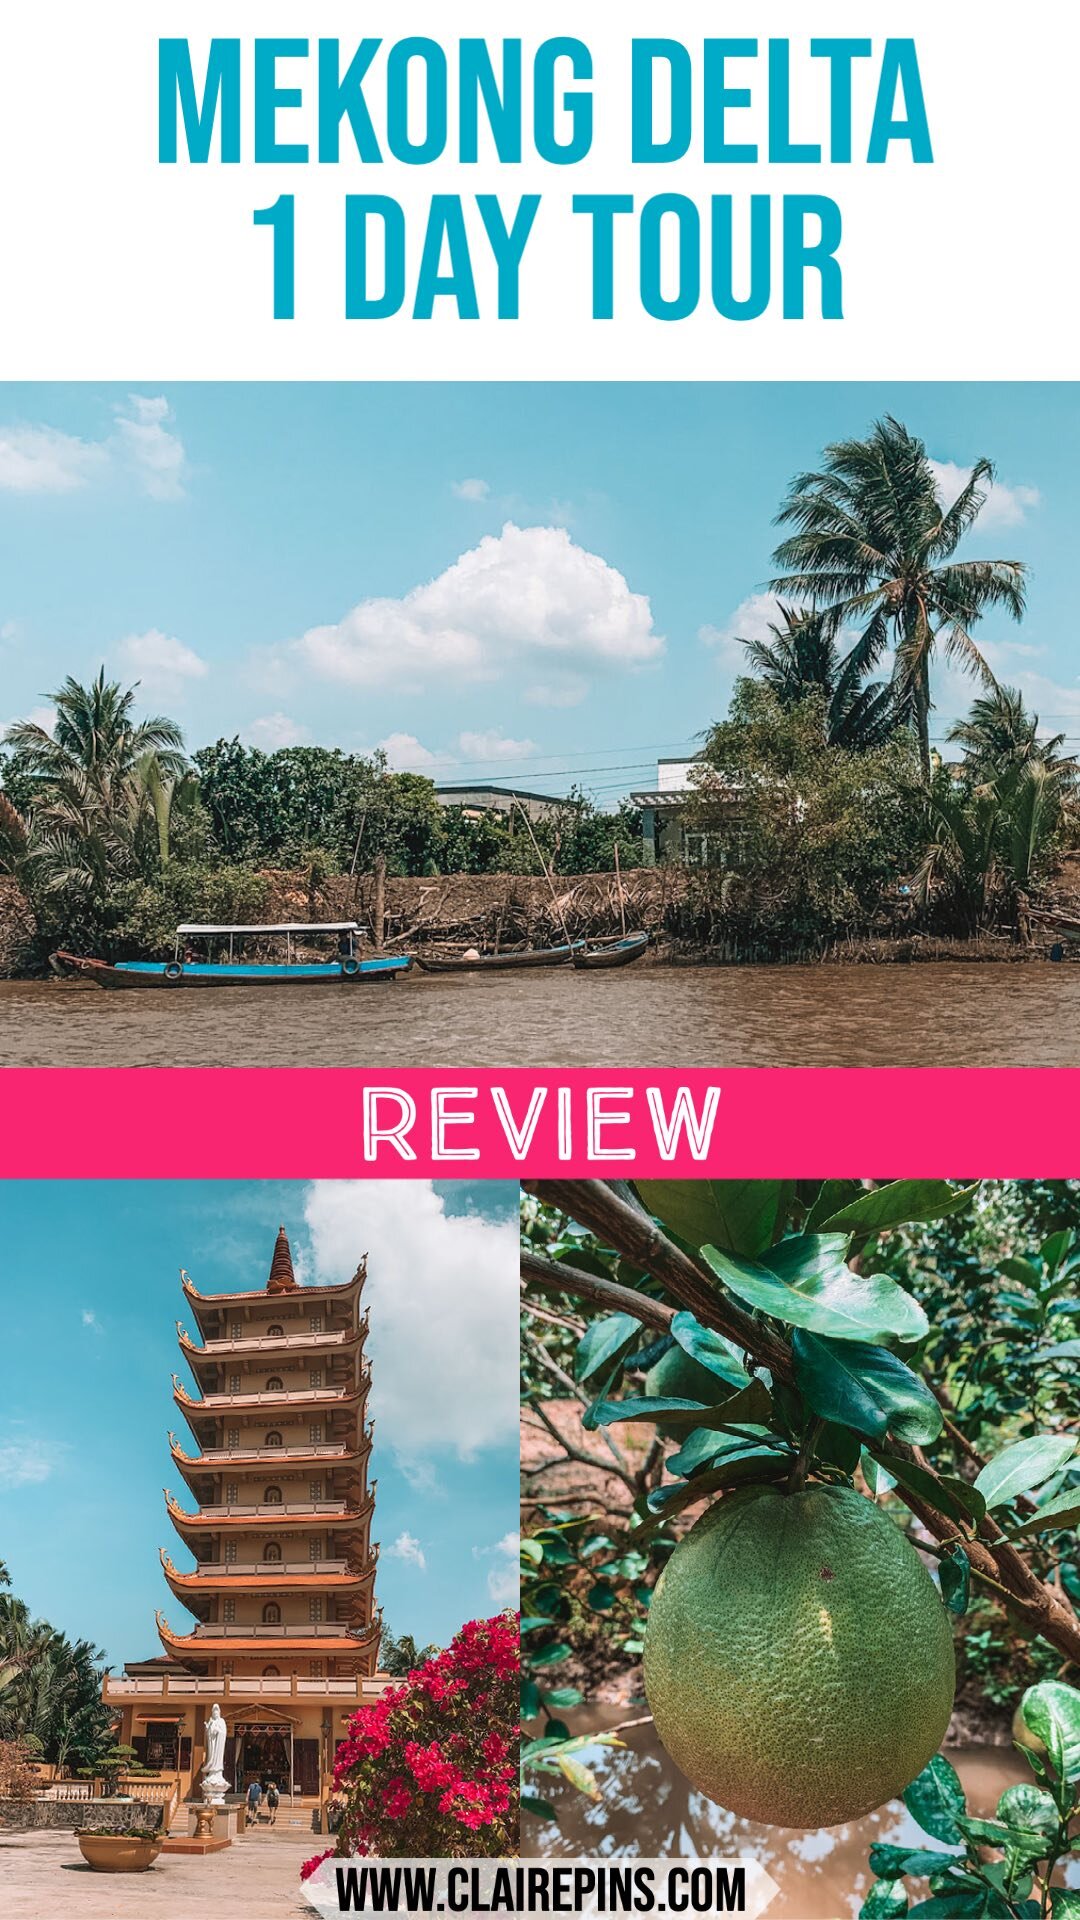 Mekong Delta tour review .jpg